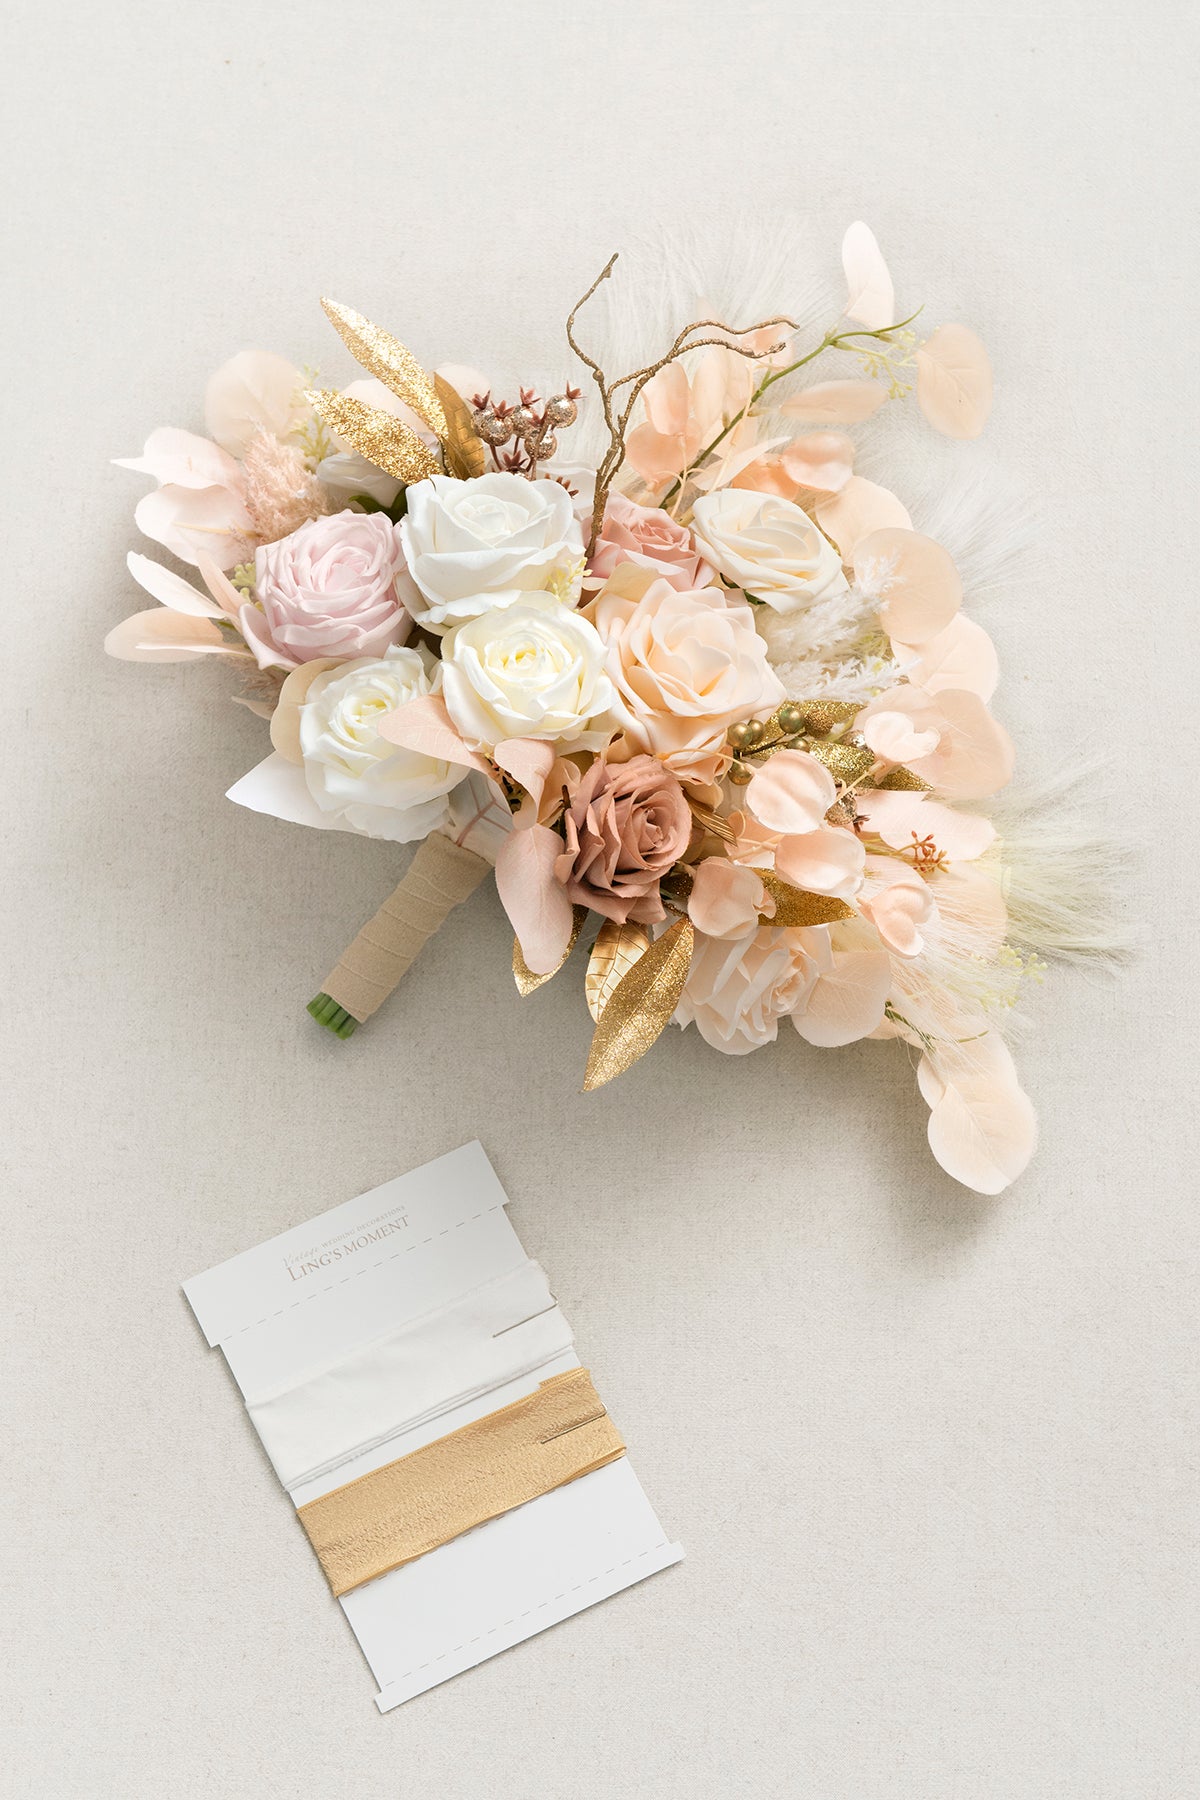 Medium Free-Form Bridal Bouquet in White & Beige